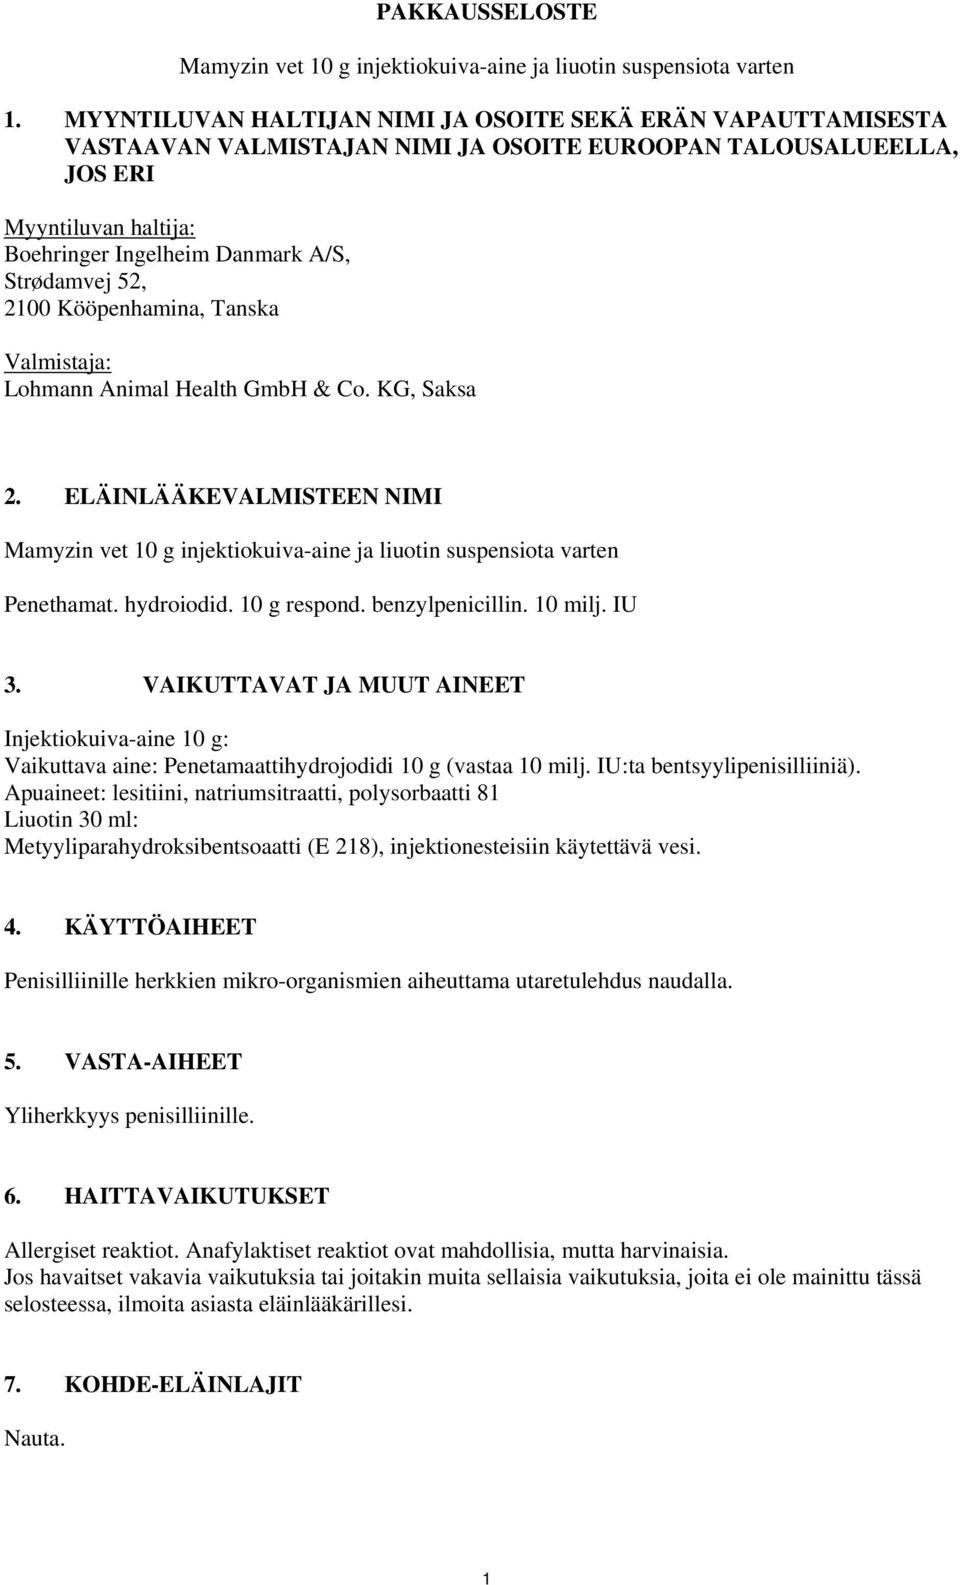 52, 2100 Kööpenhamina, Tanska Valmistaja: Lohmann Animal Health GmbH & Co. KG, Saksa 2. ELÄINLÄÄKEVALMISTEEN NIMI Mamyzin vet 10 g injektiokuiva-aine ja liuotin suspensiota varten Penethamat.